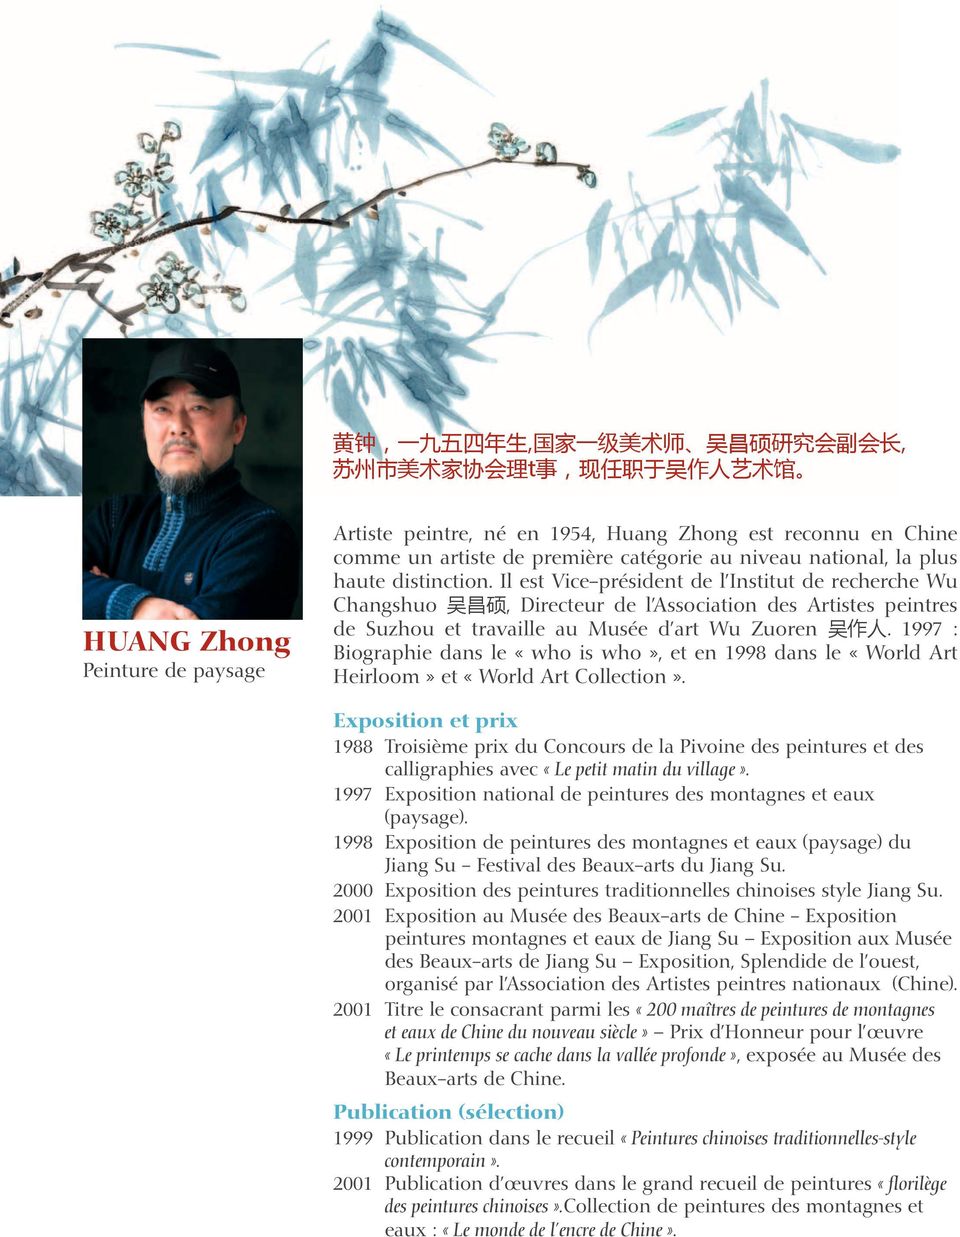 Il est Vice-président de l Institut de recherche Wu Changshuo 吴 昌 硕, Directeur de l Association des Artistes peintres de Suzhou et travaille au Musée d art Wu Zuoren 吴 作 人.